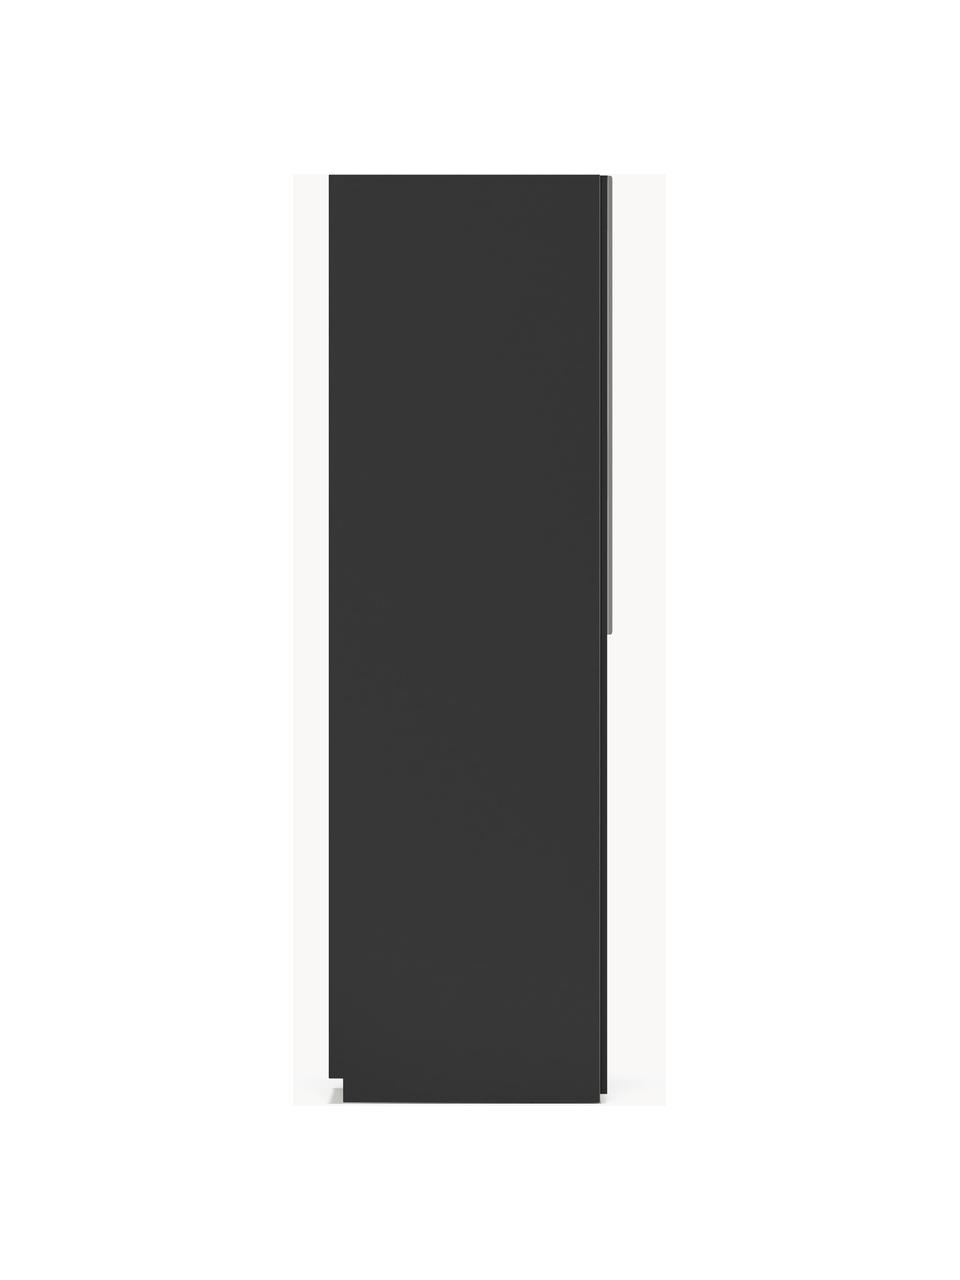 Modulaire draaideurkast Leon, 50 cm breed, diverse varianten, Frame: met melamine beklede spaa, Zwart, Klassiek interieur, B 50 x H 200 cm